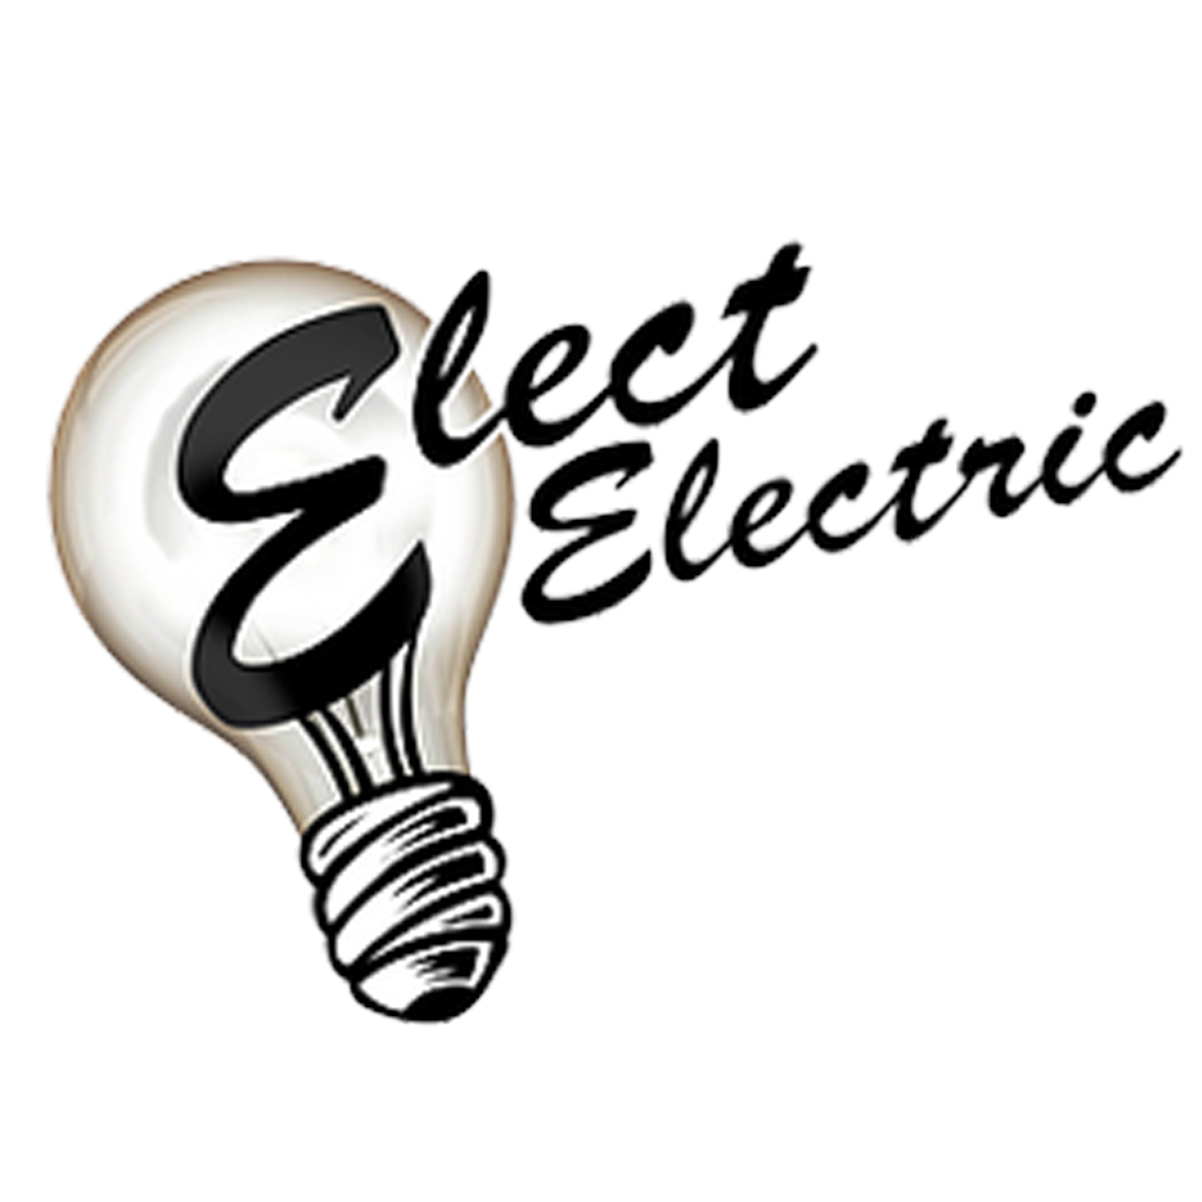 Elect Electric - Atascadero, CA - (805)438-4357 | ShowMeLocal.com